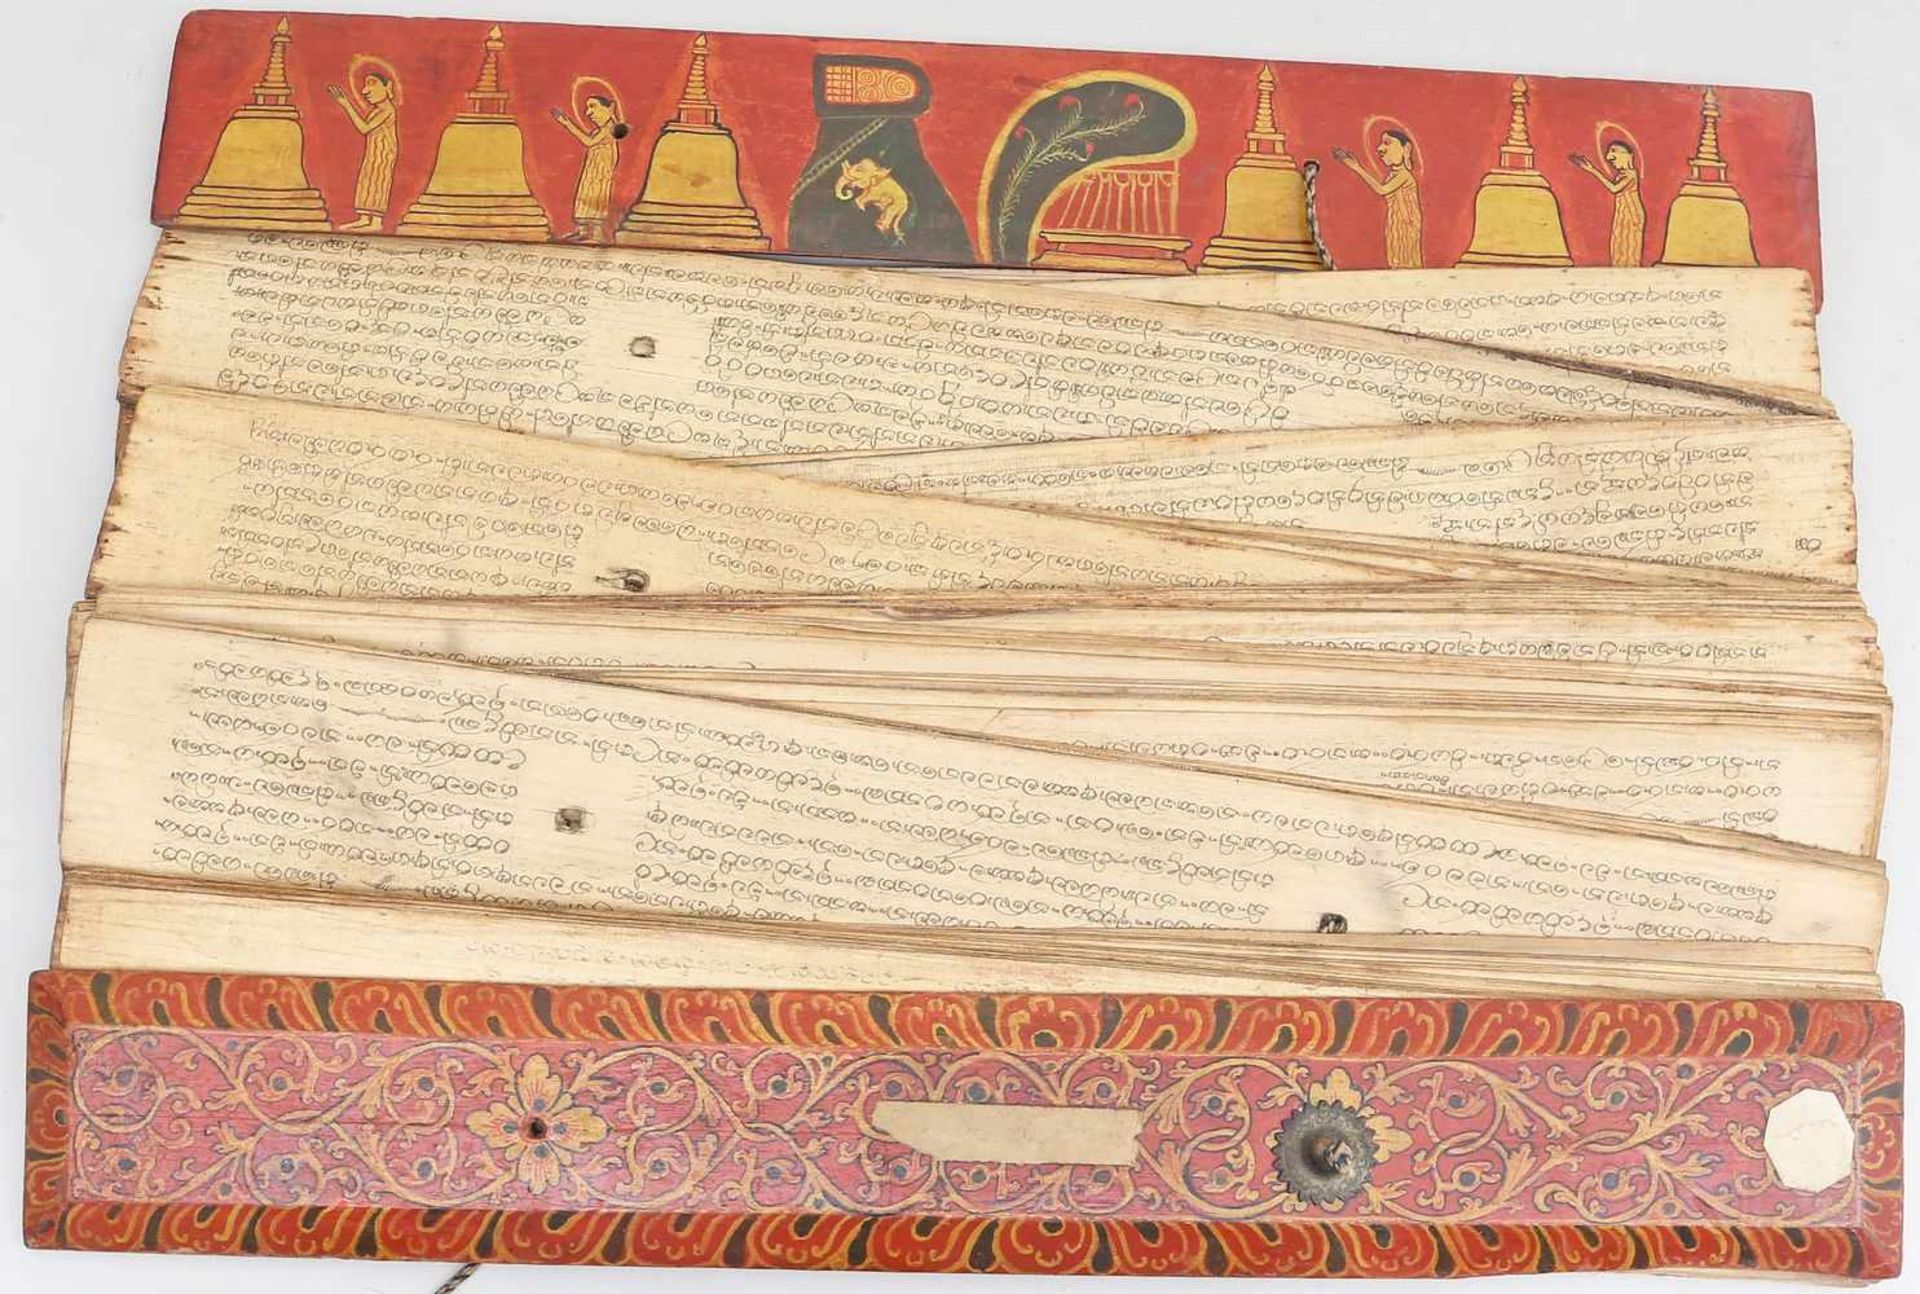 Palmblattbuch.Holzeinband mit Palmblattseiten und Sutratexten in singhalesischer Schrift.